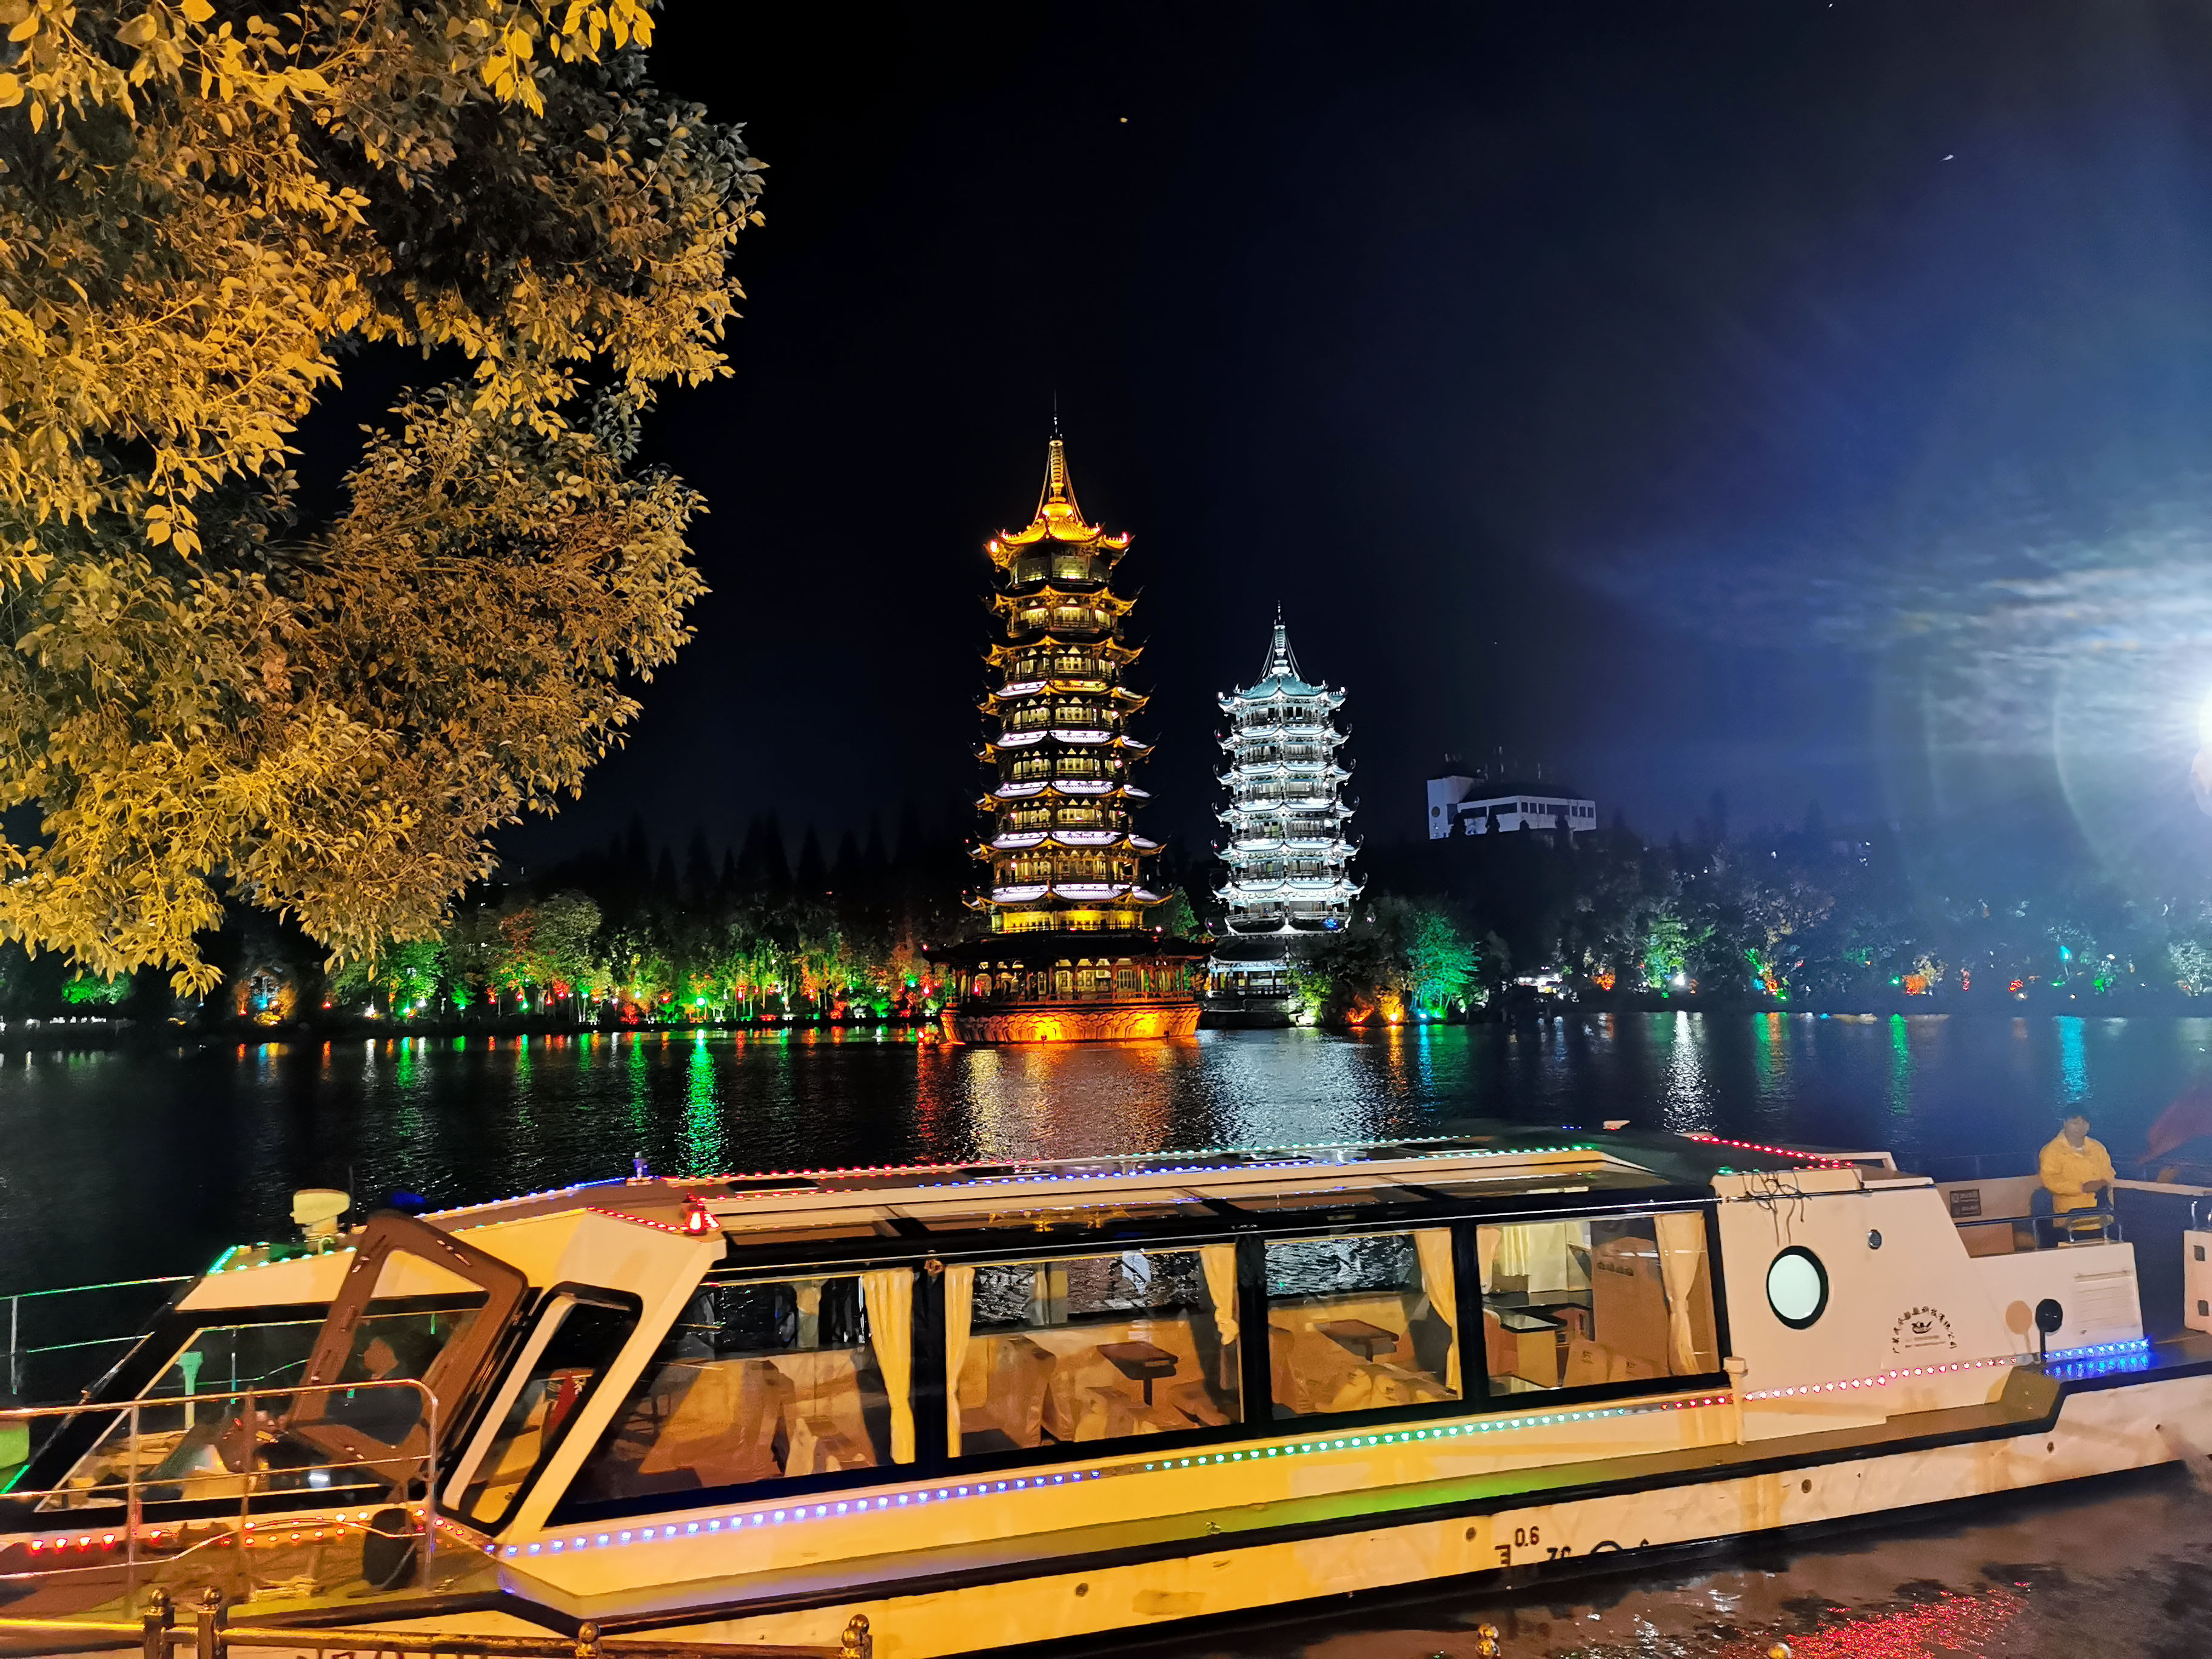 【携程攻略】桂林两江四湖景点,两江四湖的夜景还是很漂亮的。